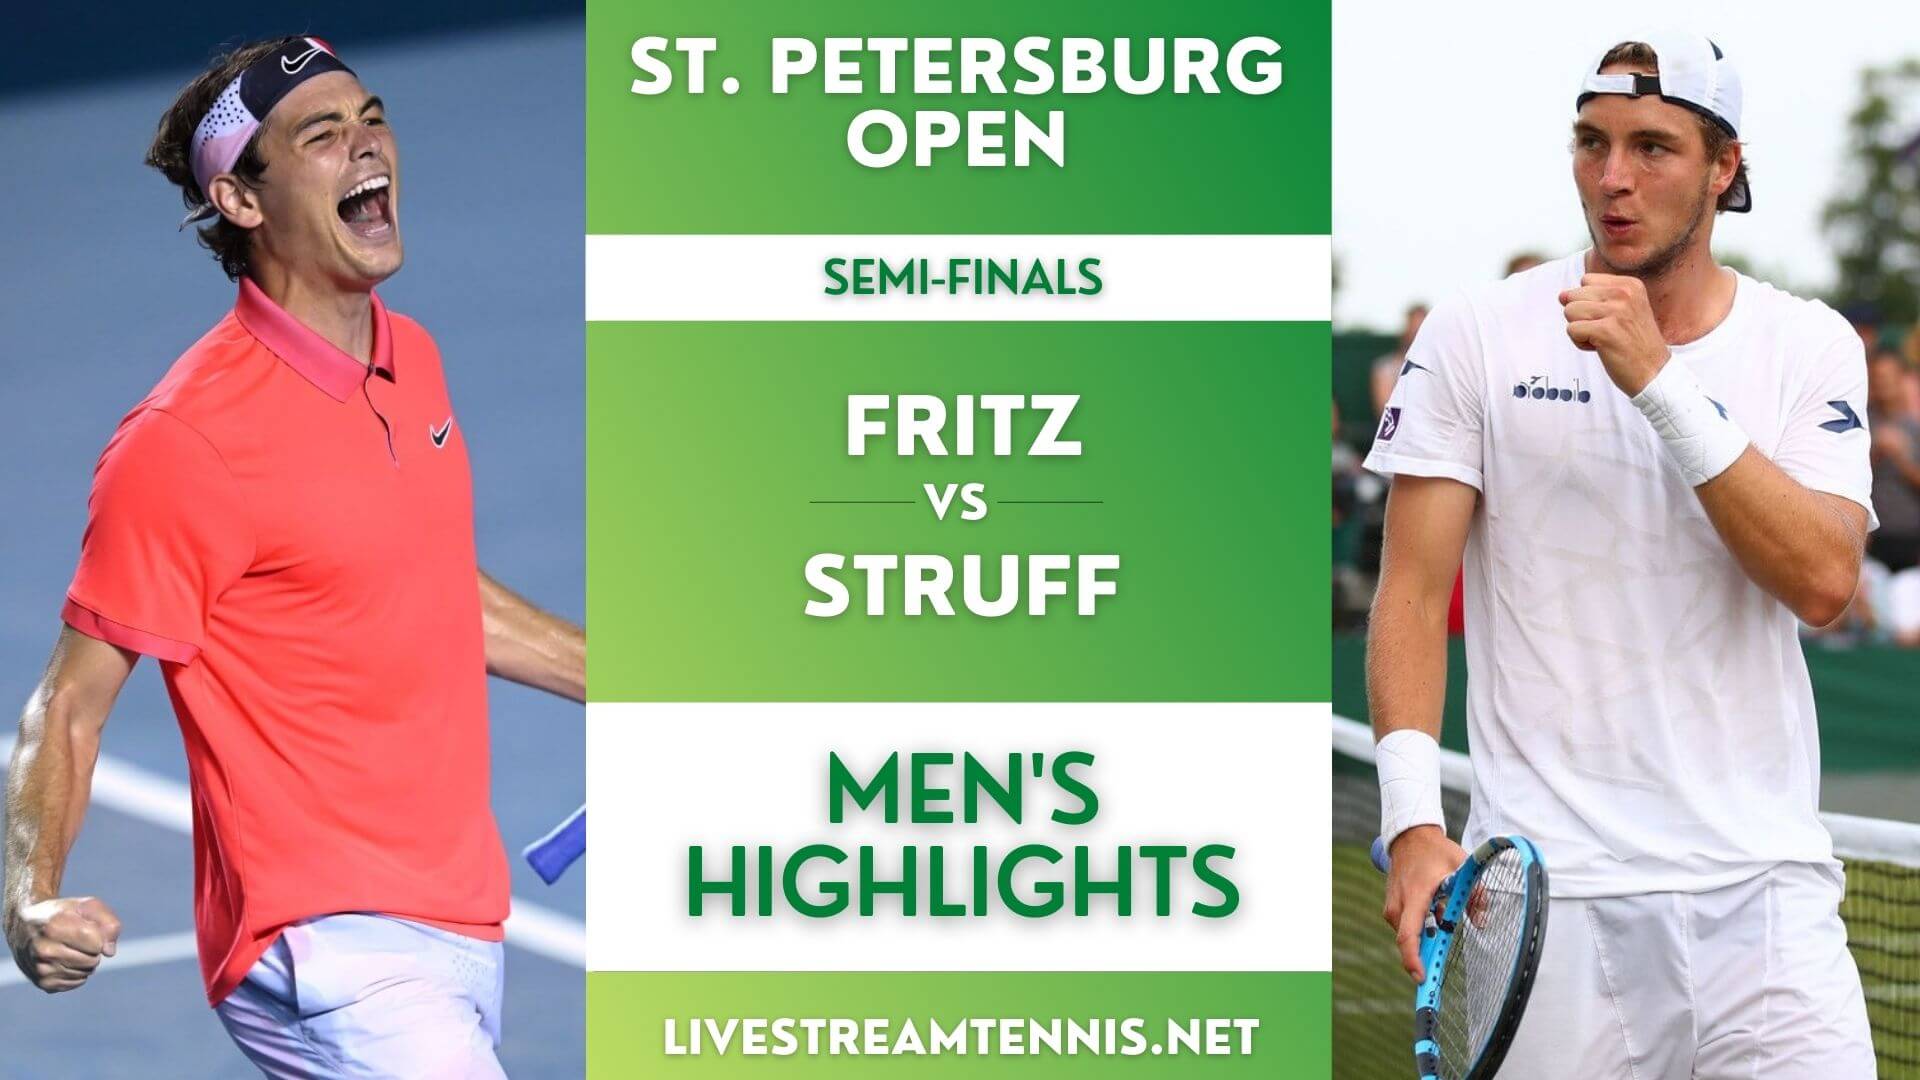 St Petersburg Open ATP Semi Final 2 Highlights 2021